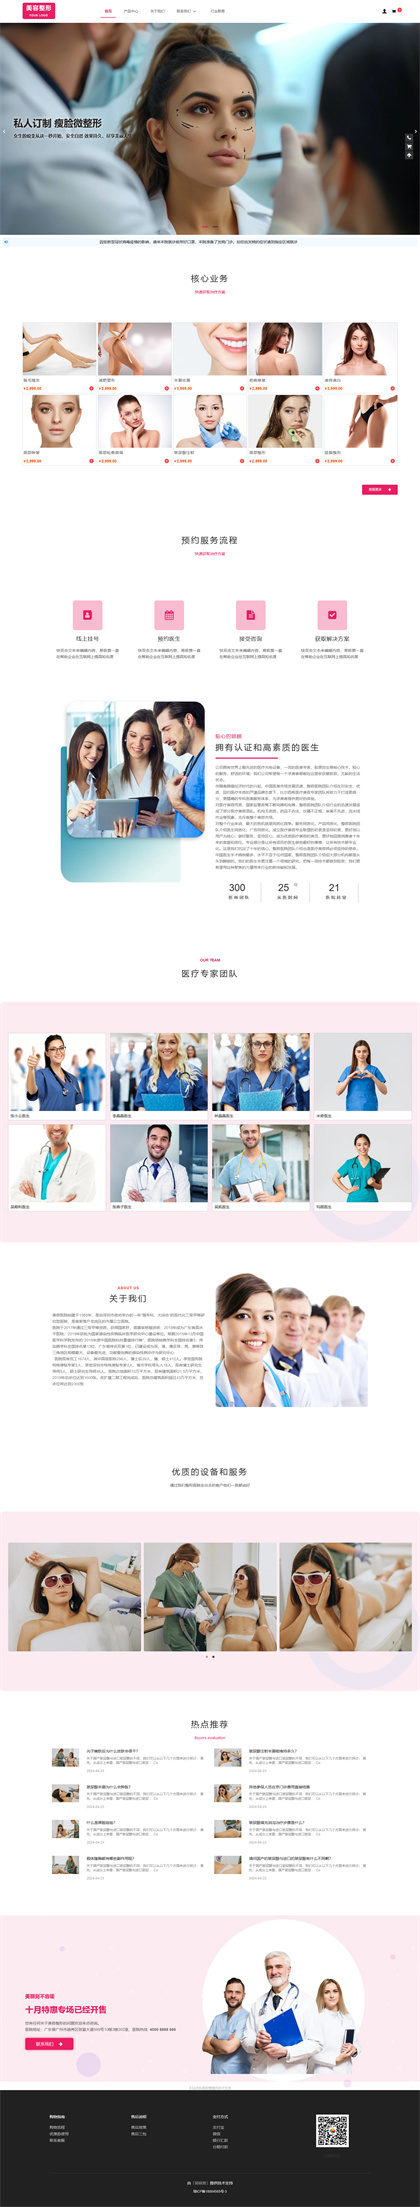 医疗美容-整形医院-整容医院-整容机构-医美加盟-中韩整形商城网站模板网站模板图片